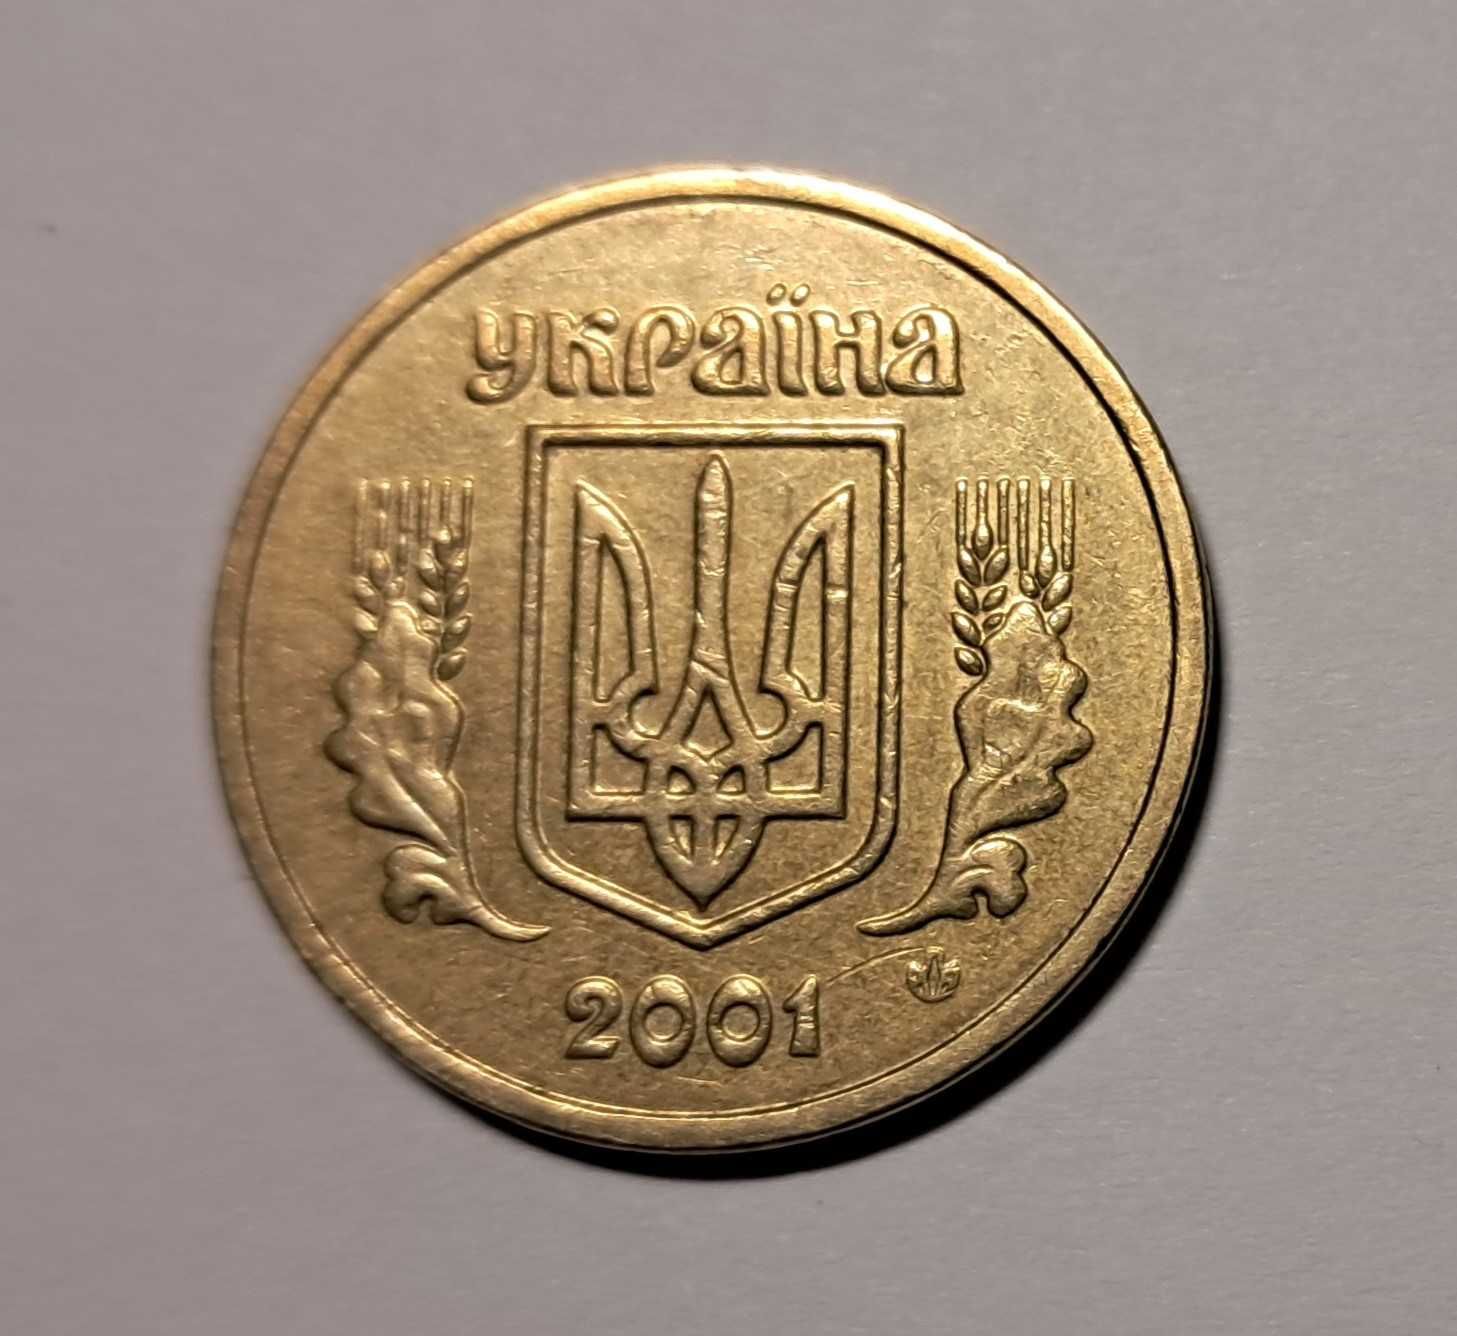 Редкая украинская монета 1 гривна 2001 2АЕ3 уменьшенный аверс и реверс